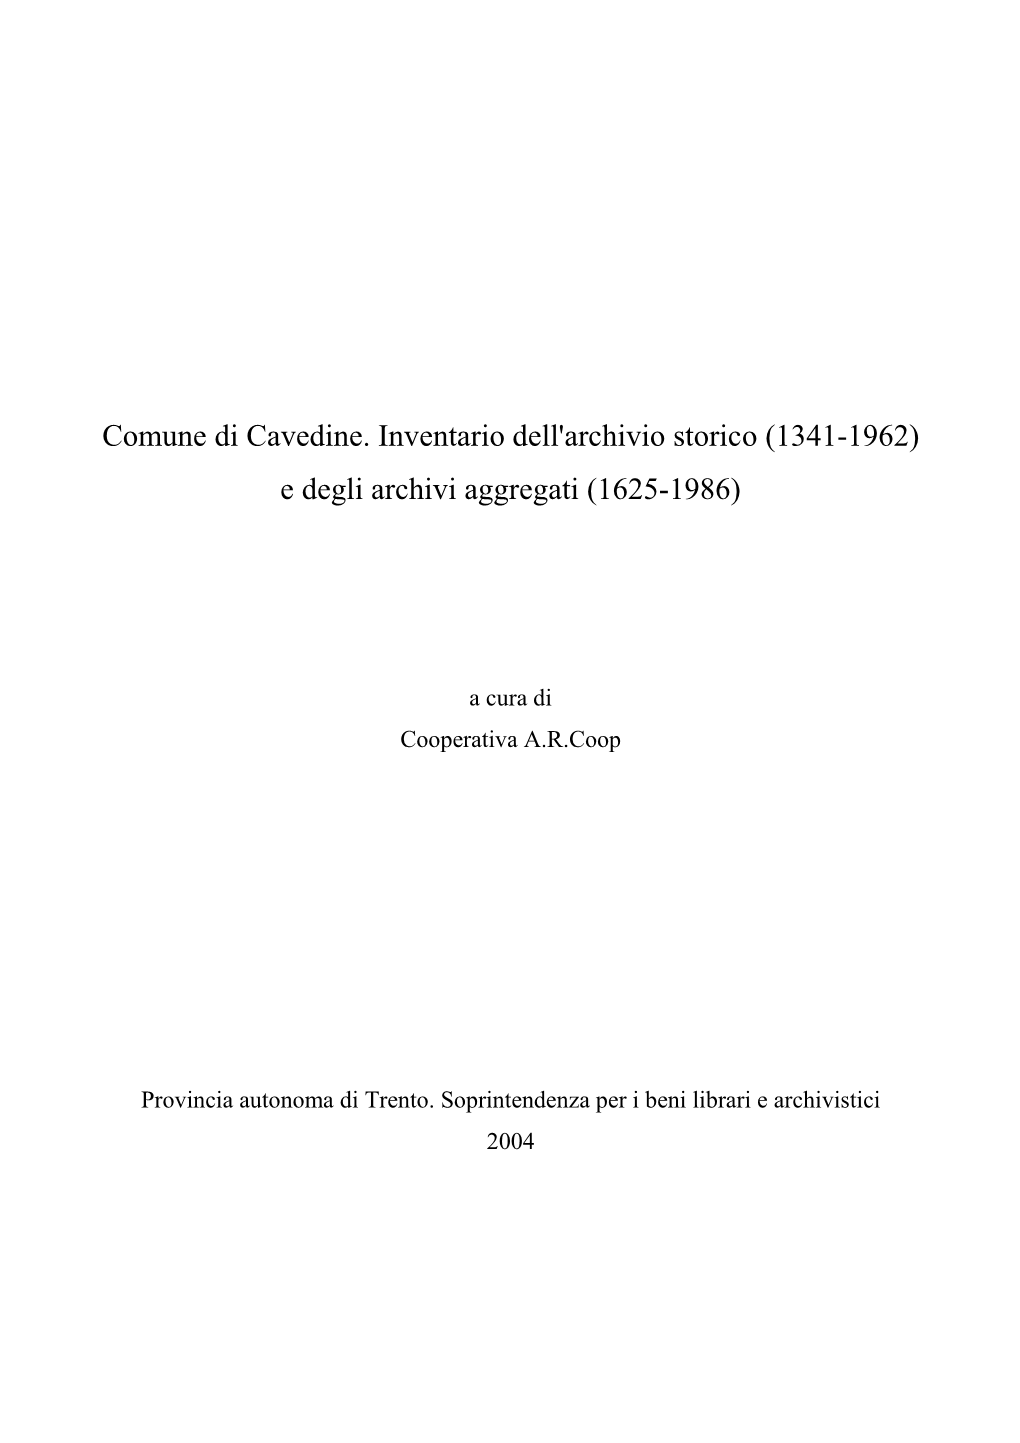 Comune Di Cavedine. Inventario Dell'archivio Storico (1341-1962) E Degli Archivi Aggregati (1625-1986)